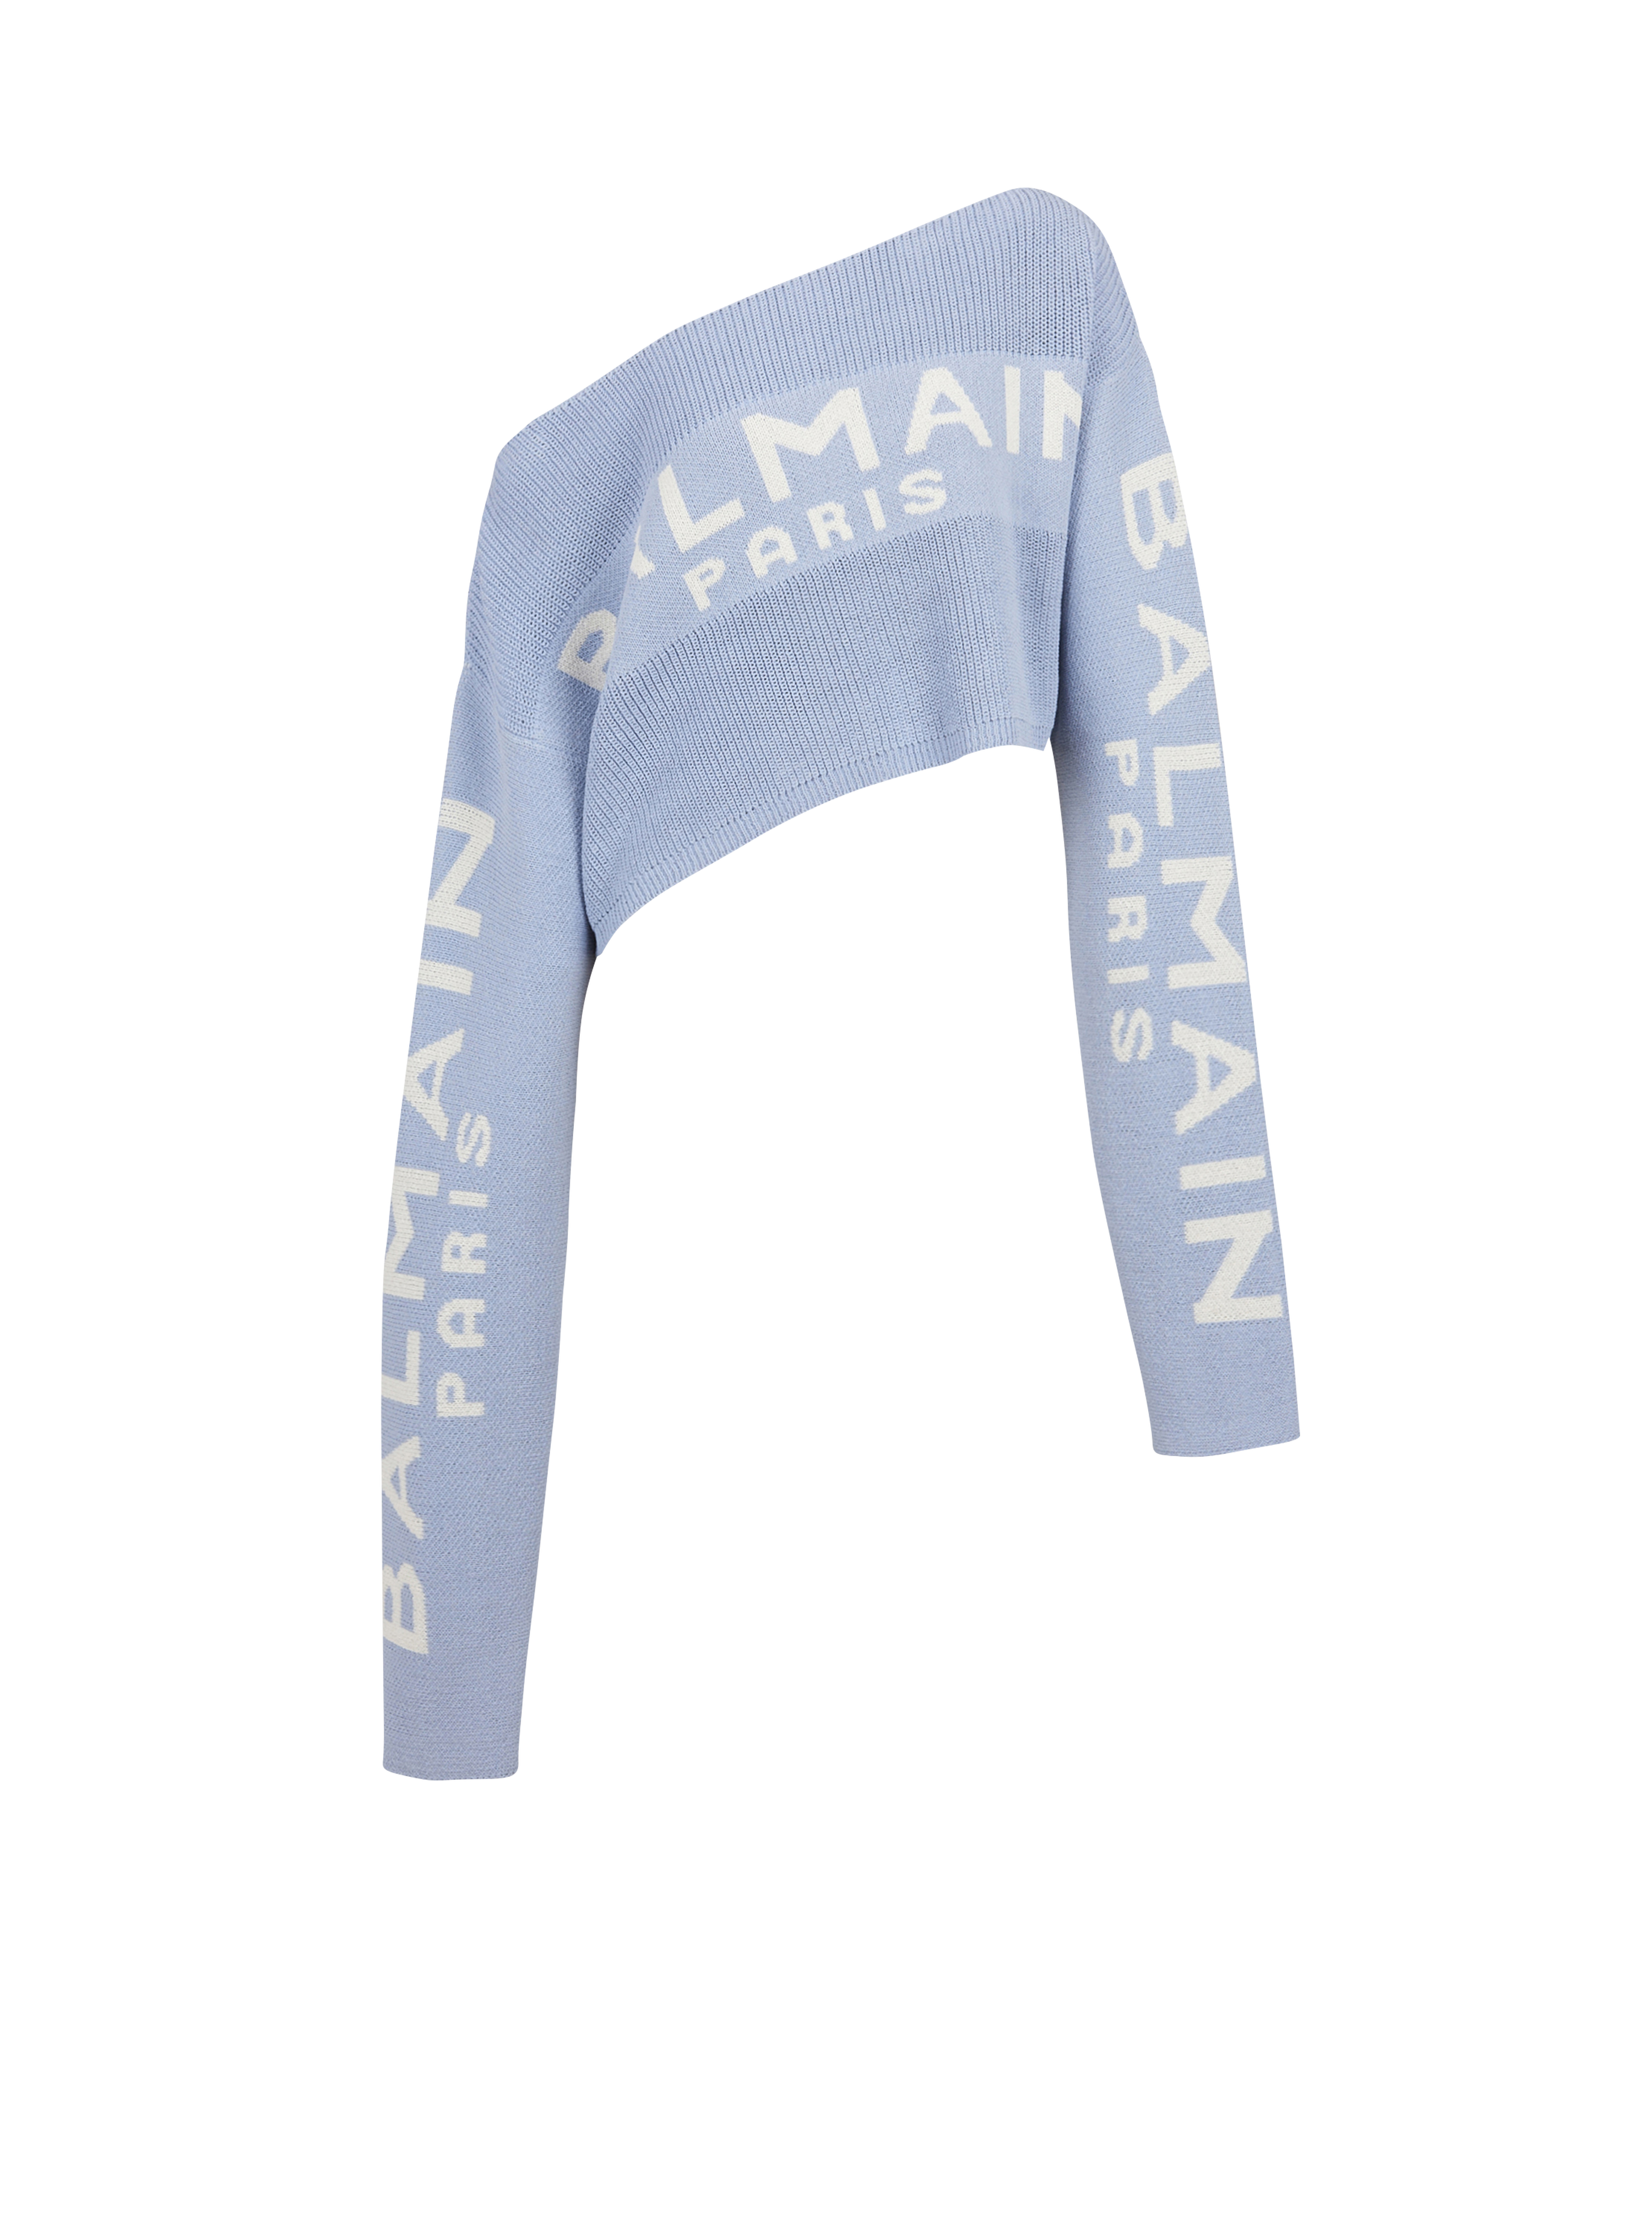 Pullover corto in maglia con logo Balmain graffiti, blu